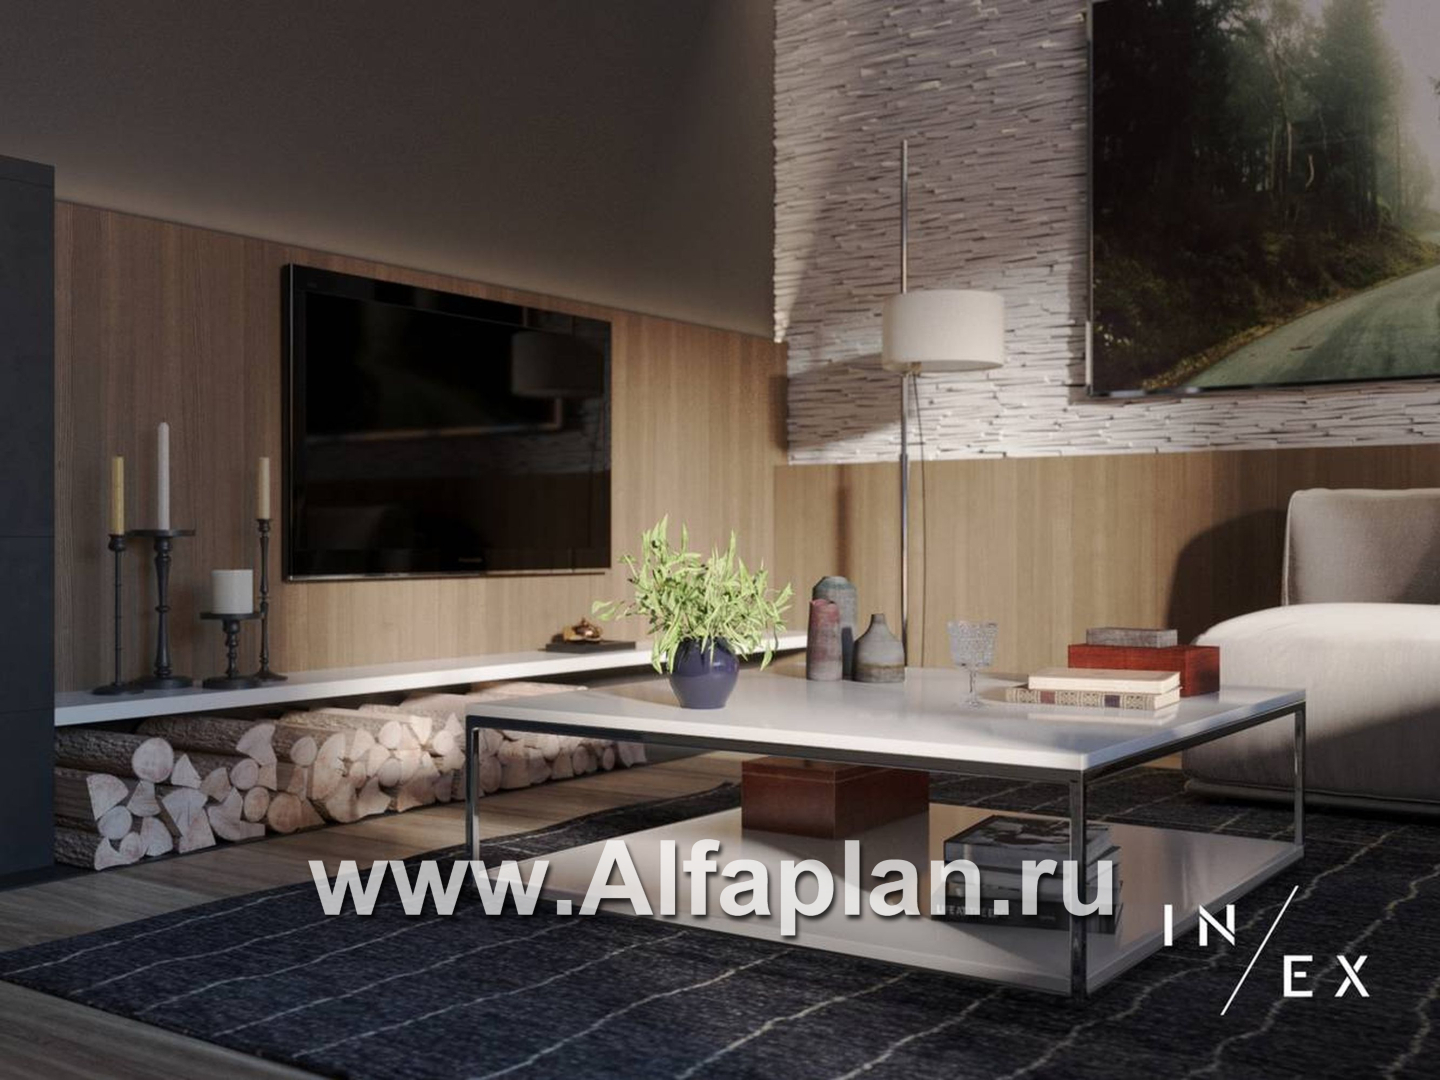 Проекты домов Альфаплан - «Виньон» - проект одноэтажного дома, планировка с большой террасой, 2 спальни - дополнительное изображение №5